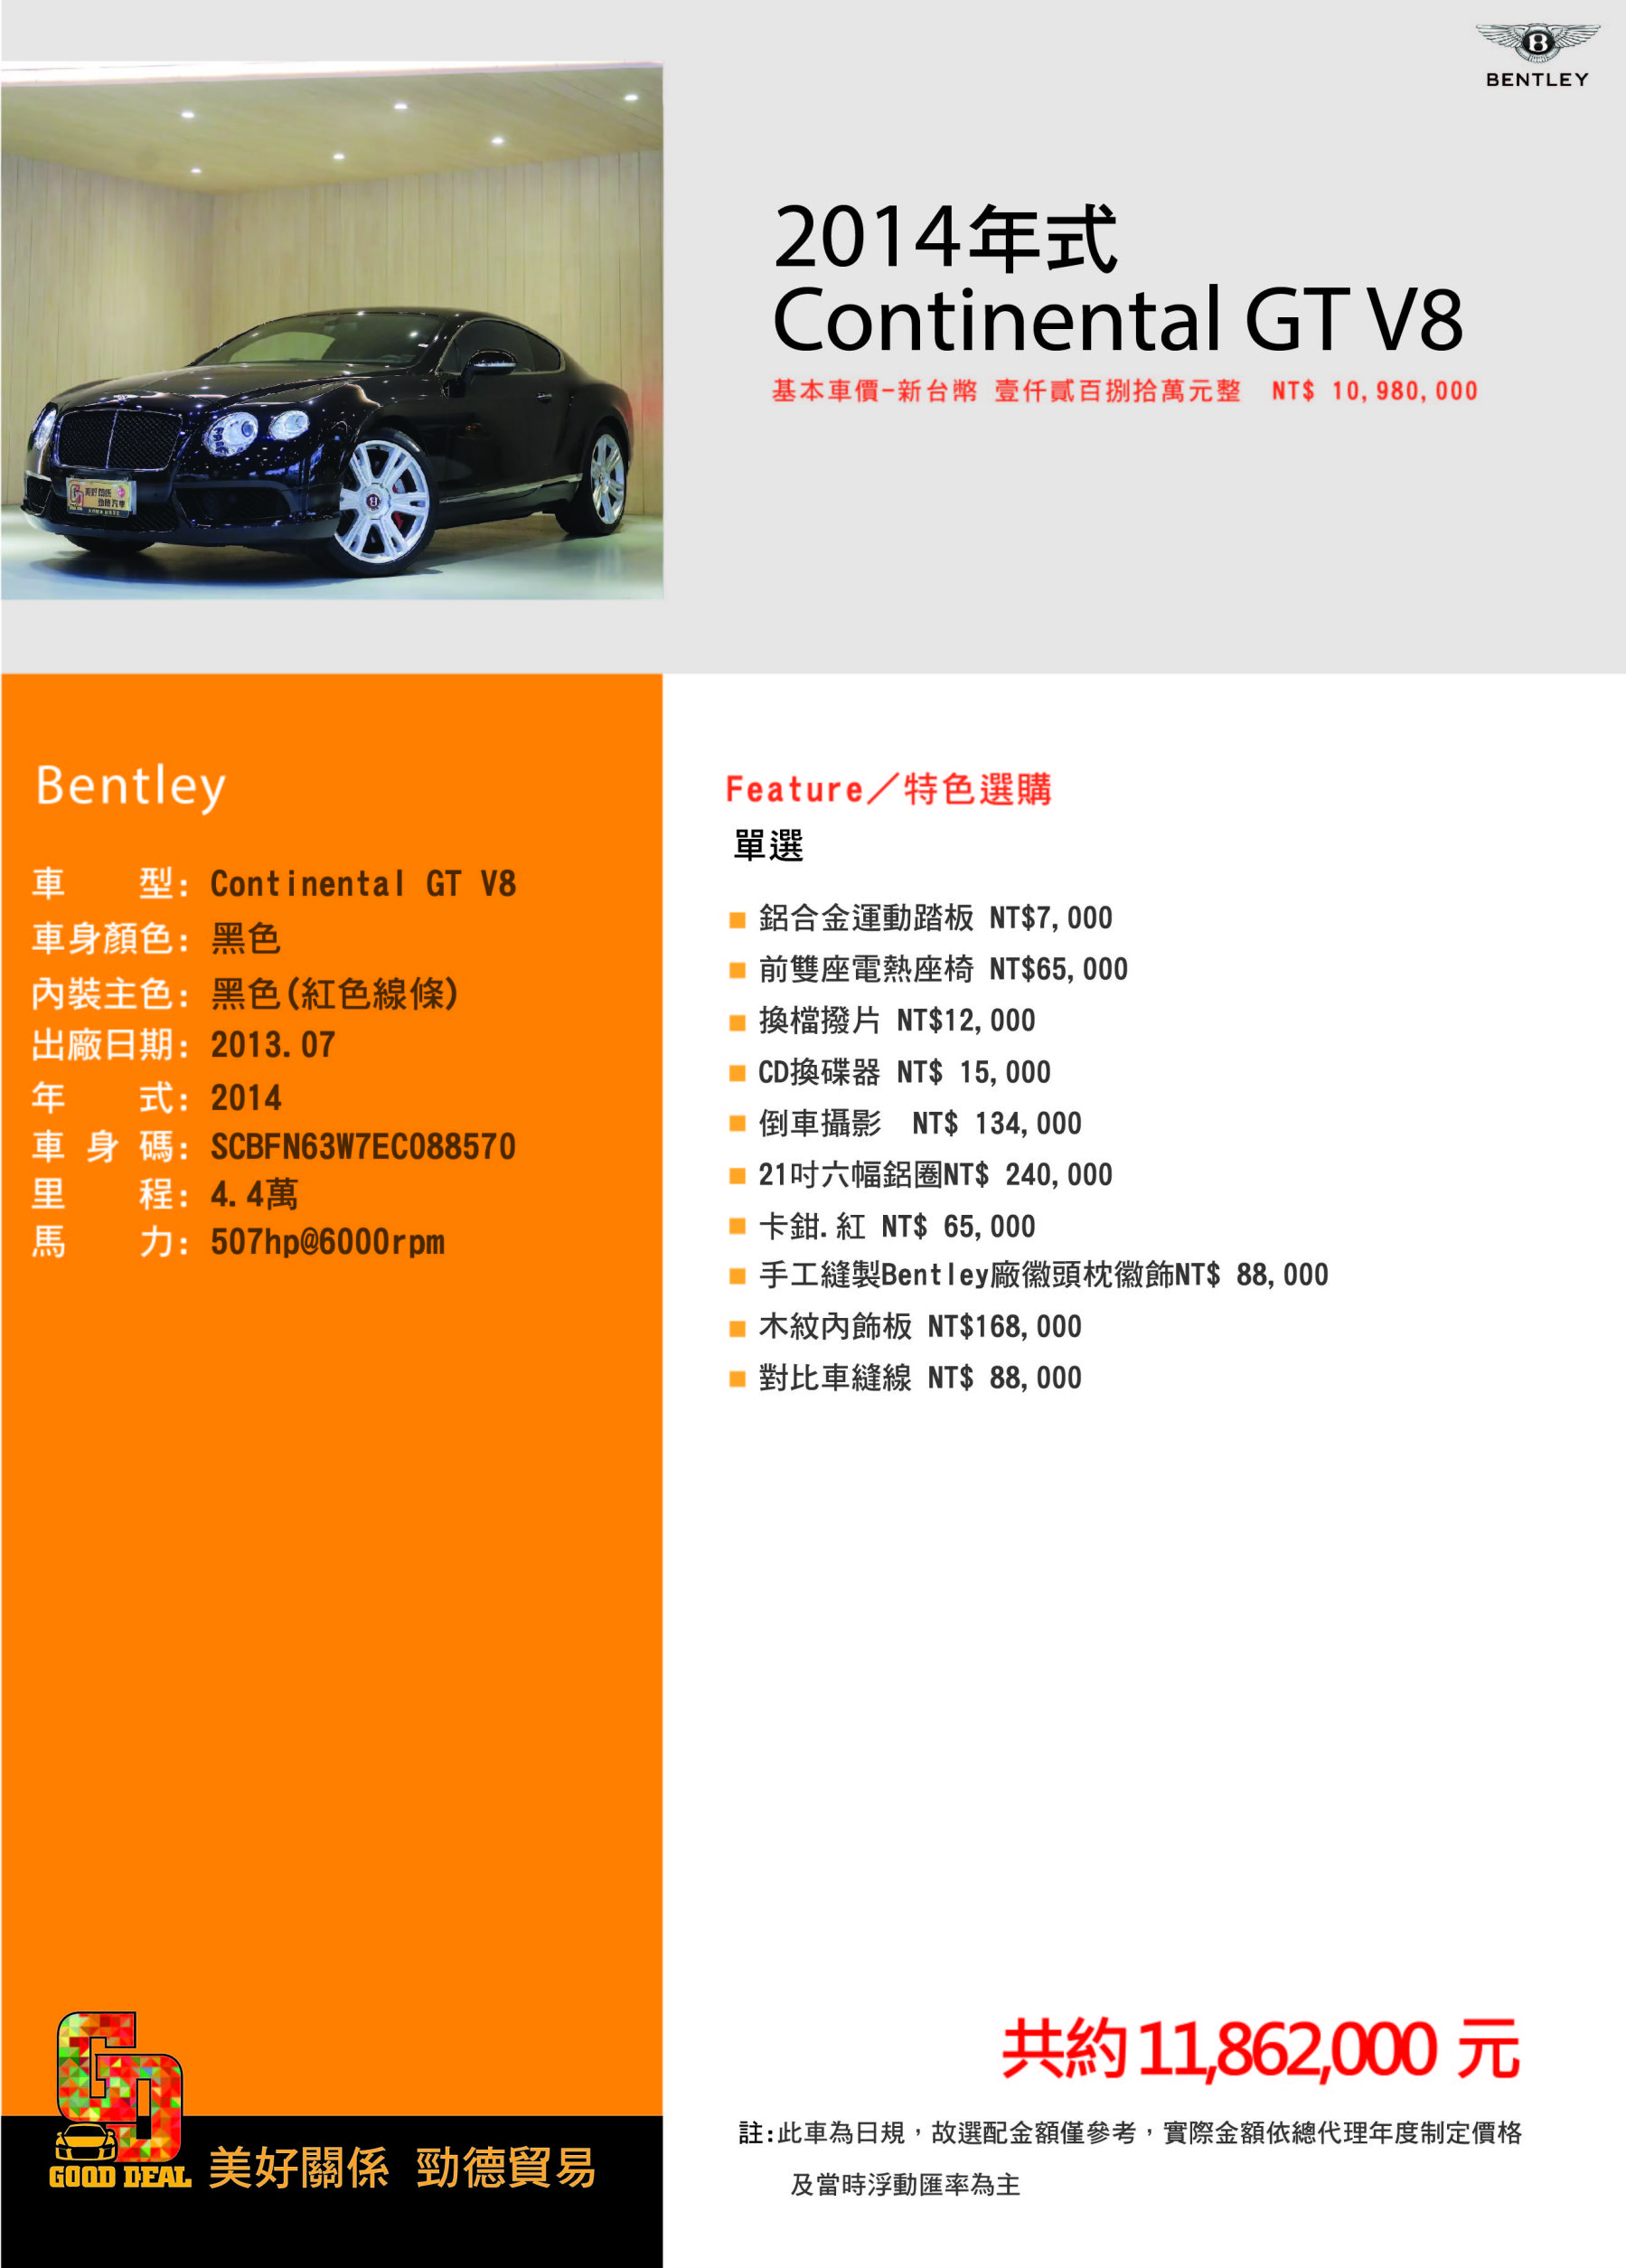 81中古車 賓利continental Gt 4 0l 美好關係14年式gt V8 保養已完成21吋圈贈送中文化